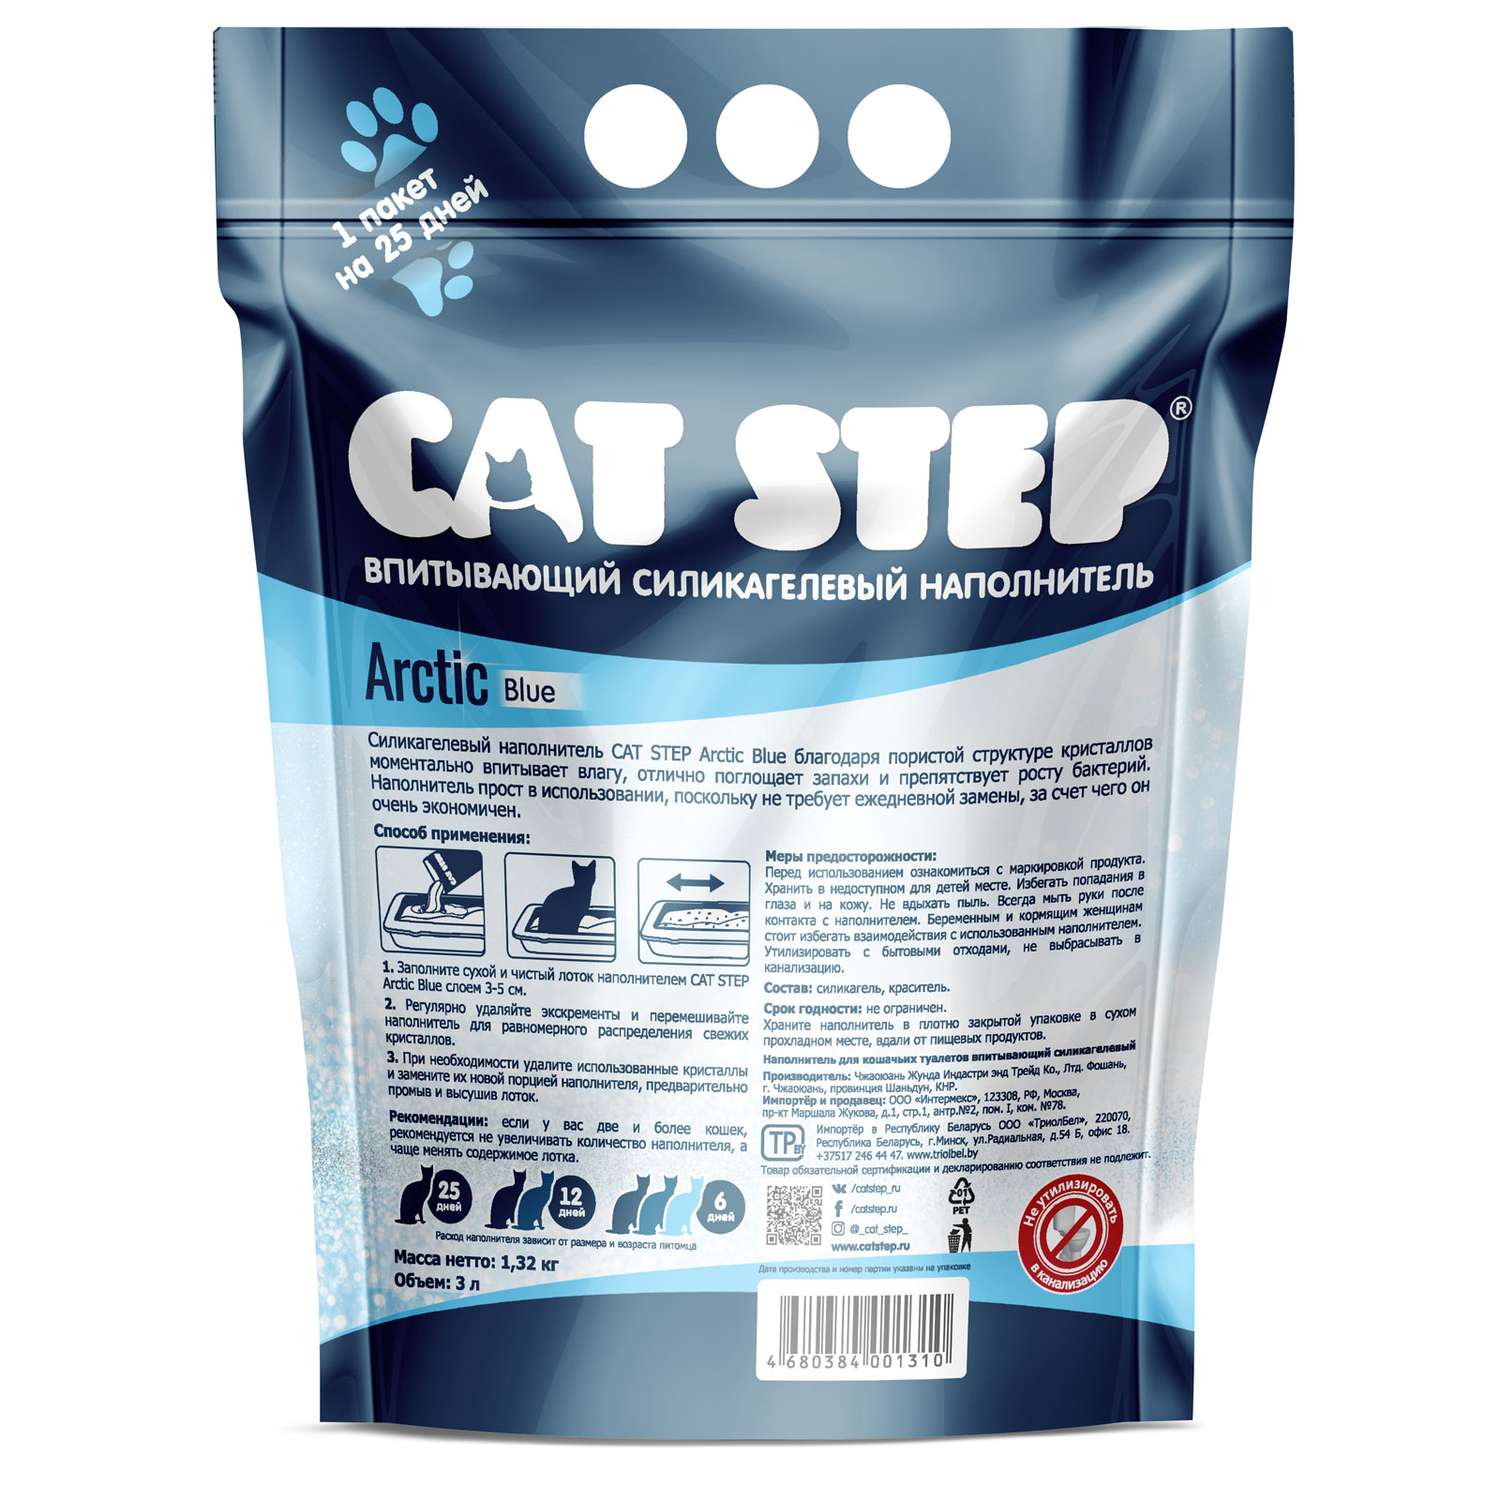 Наполнитель Cat Step Arctic Blue впитывающий силикагелевый 3л - фото 3